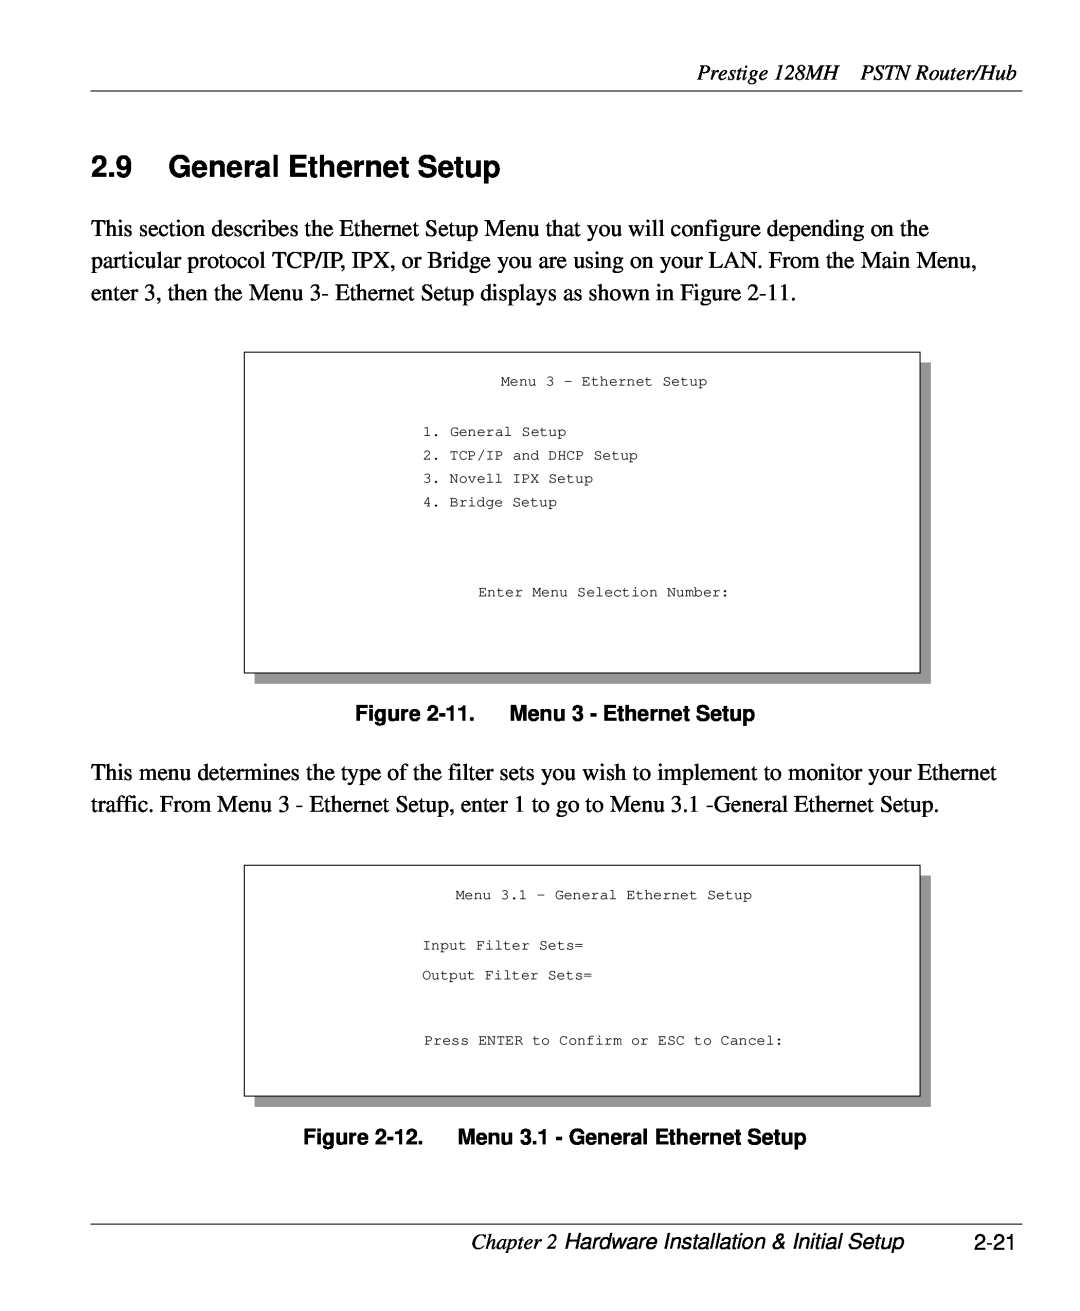 ZyXEL Communications 128MH user manual 11. Menu 3 - Ethernet Setup, 12. Menu 3.1 - General Ethernet Setup 